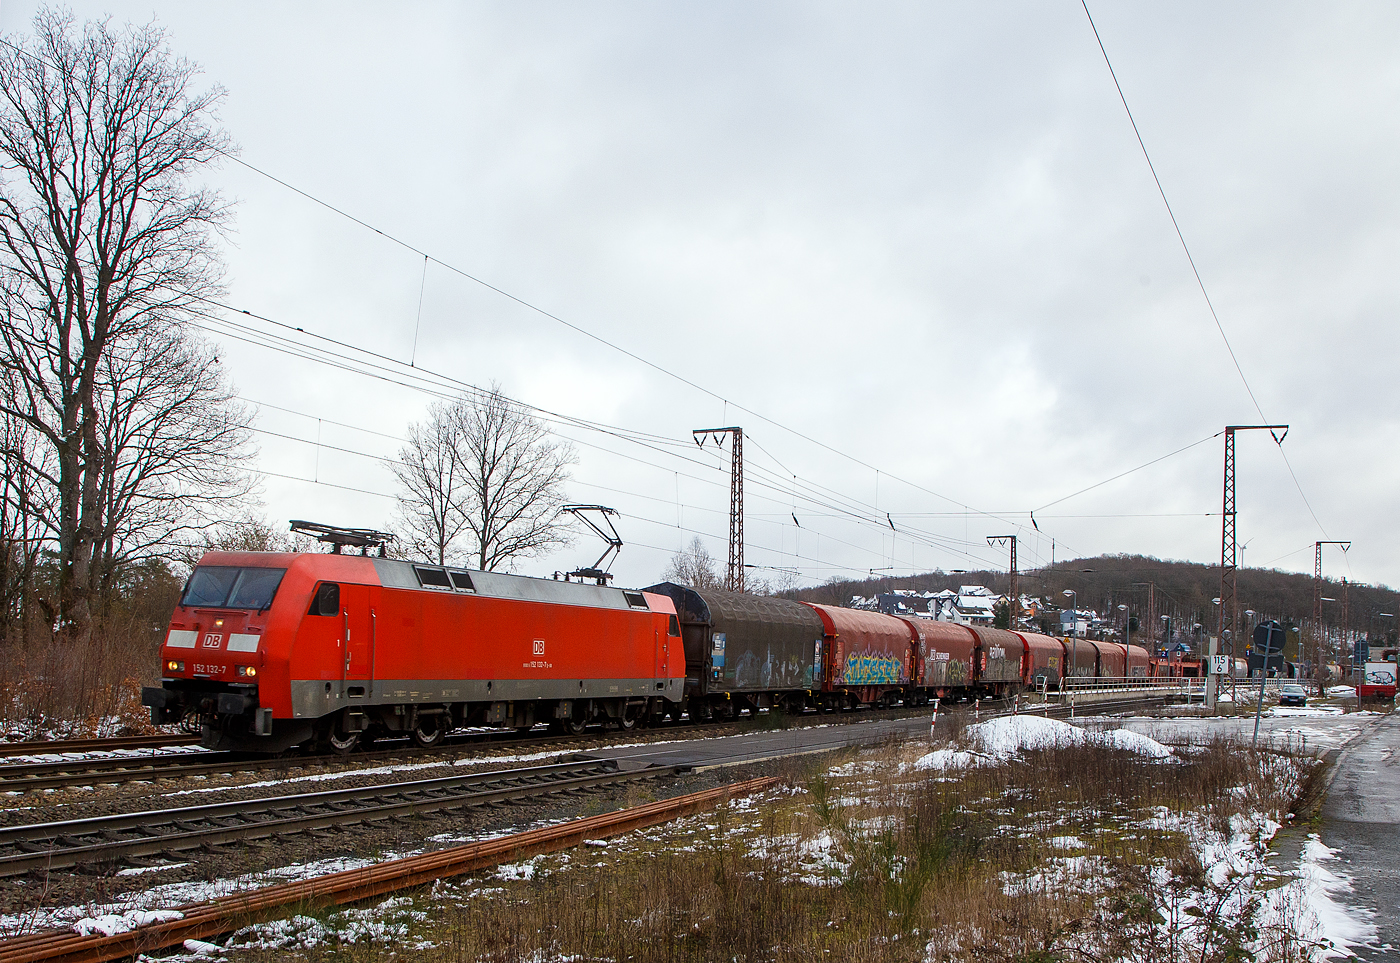 Die 152 132-7 (91 80 6152 132-7 D-DB) der DB Cargo AG am 27.01.2023  mit einem gemischten Gterzug, auf der Dillstrecke (KBS 445), durch Rudersdorf (Kr. Siegen) in Richtung Siegen bzw. Kreuztal.

Die Siemens ES 64 F wurde 2000 von Siemens in Mnchen-Allach unter der Fabriknummer 20259 gebaut und an die DB Cargo geliefert.
